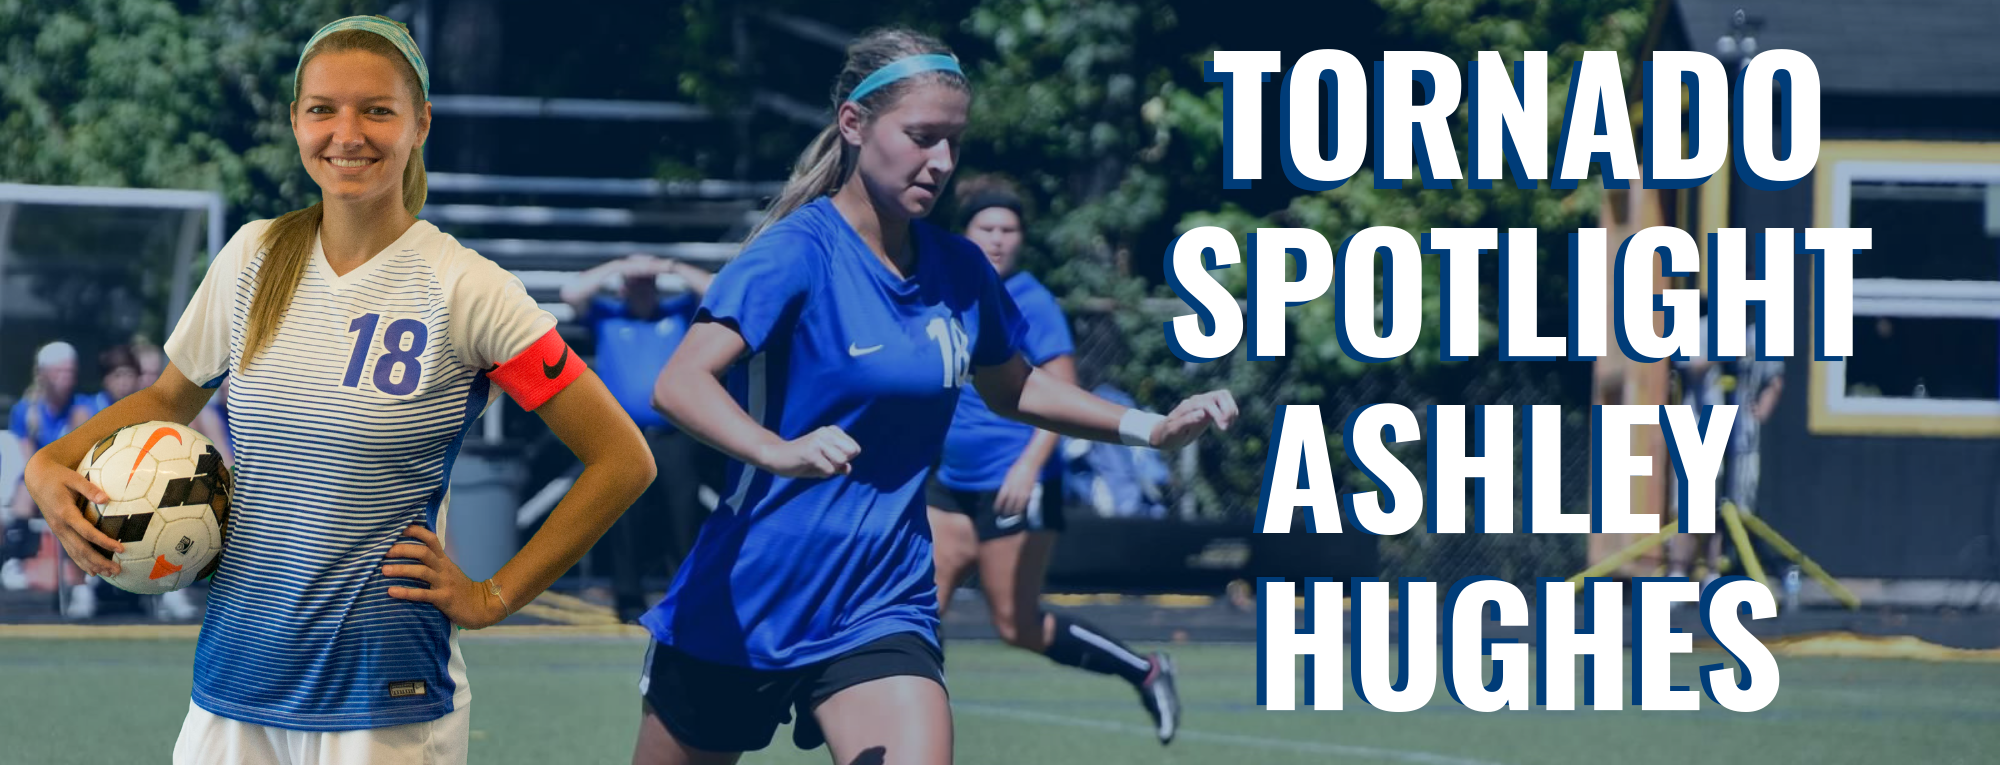 Tornado Spotlight: Ashley Hughes, Women's Soccer